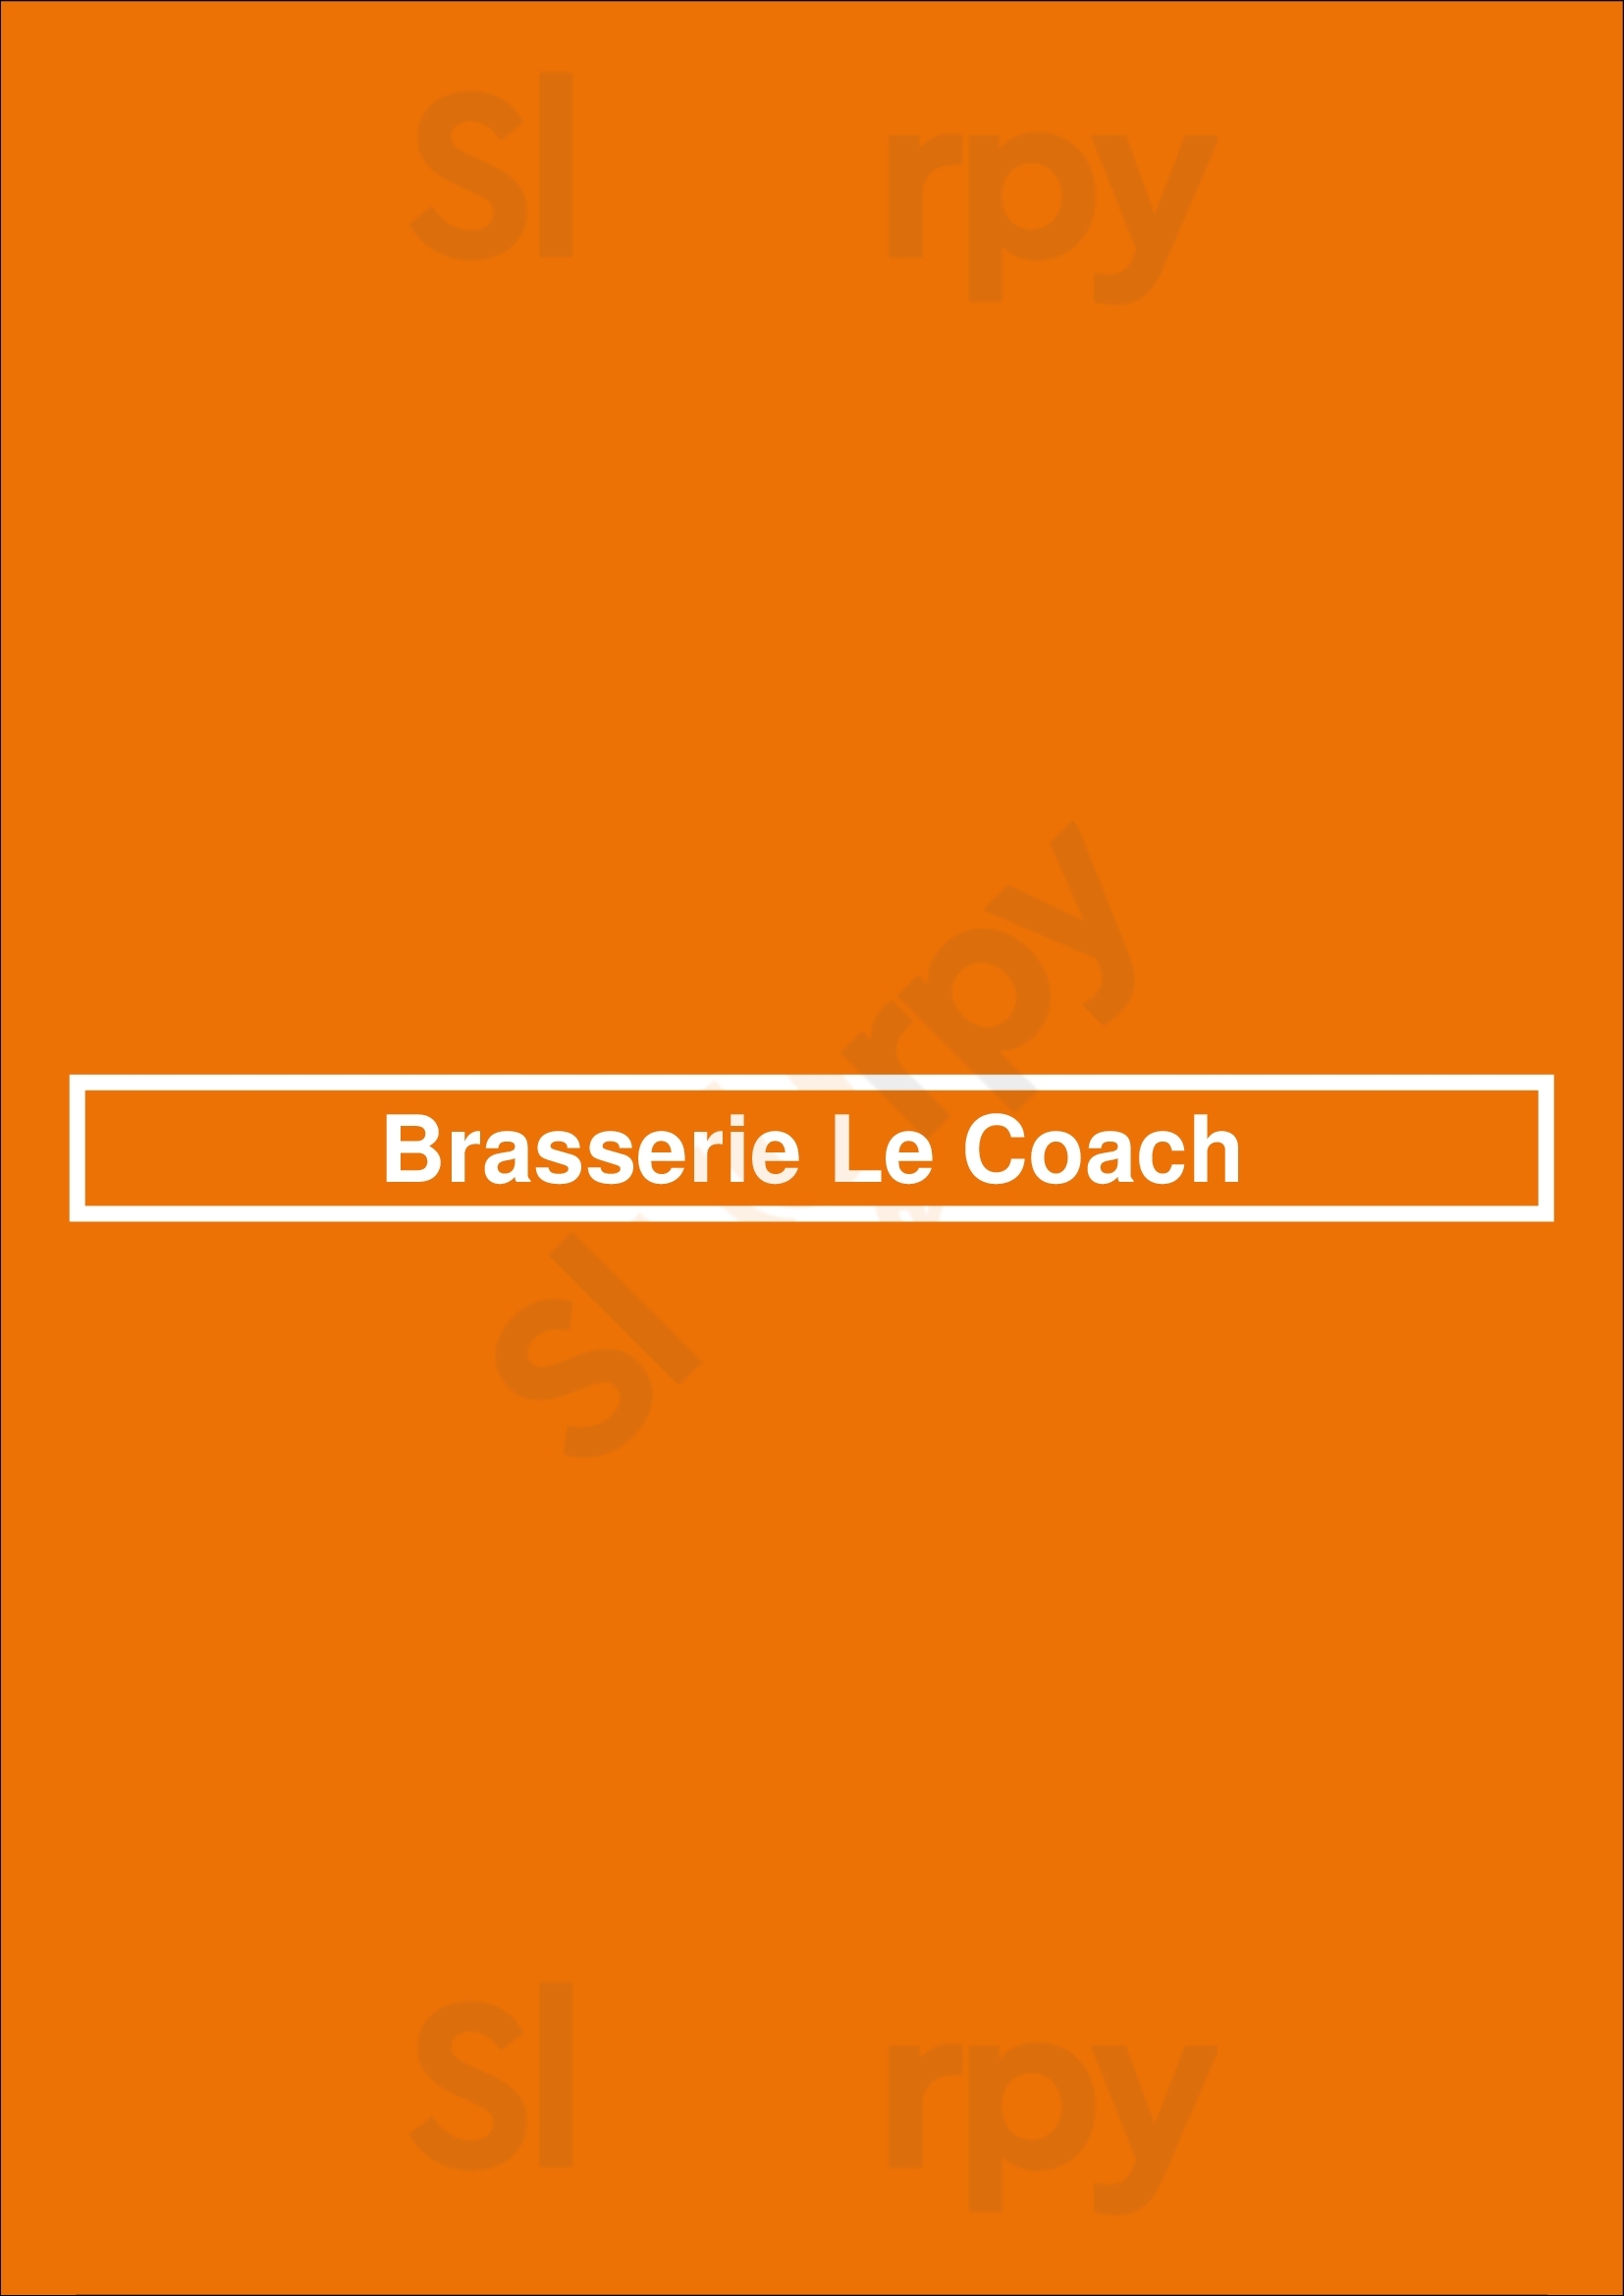 Brasserie Le Coach Bruxelles Menu - 1